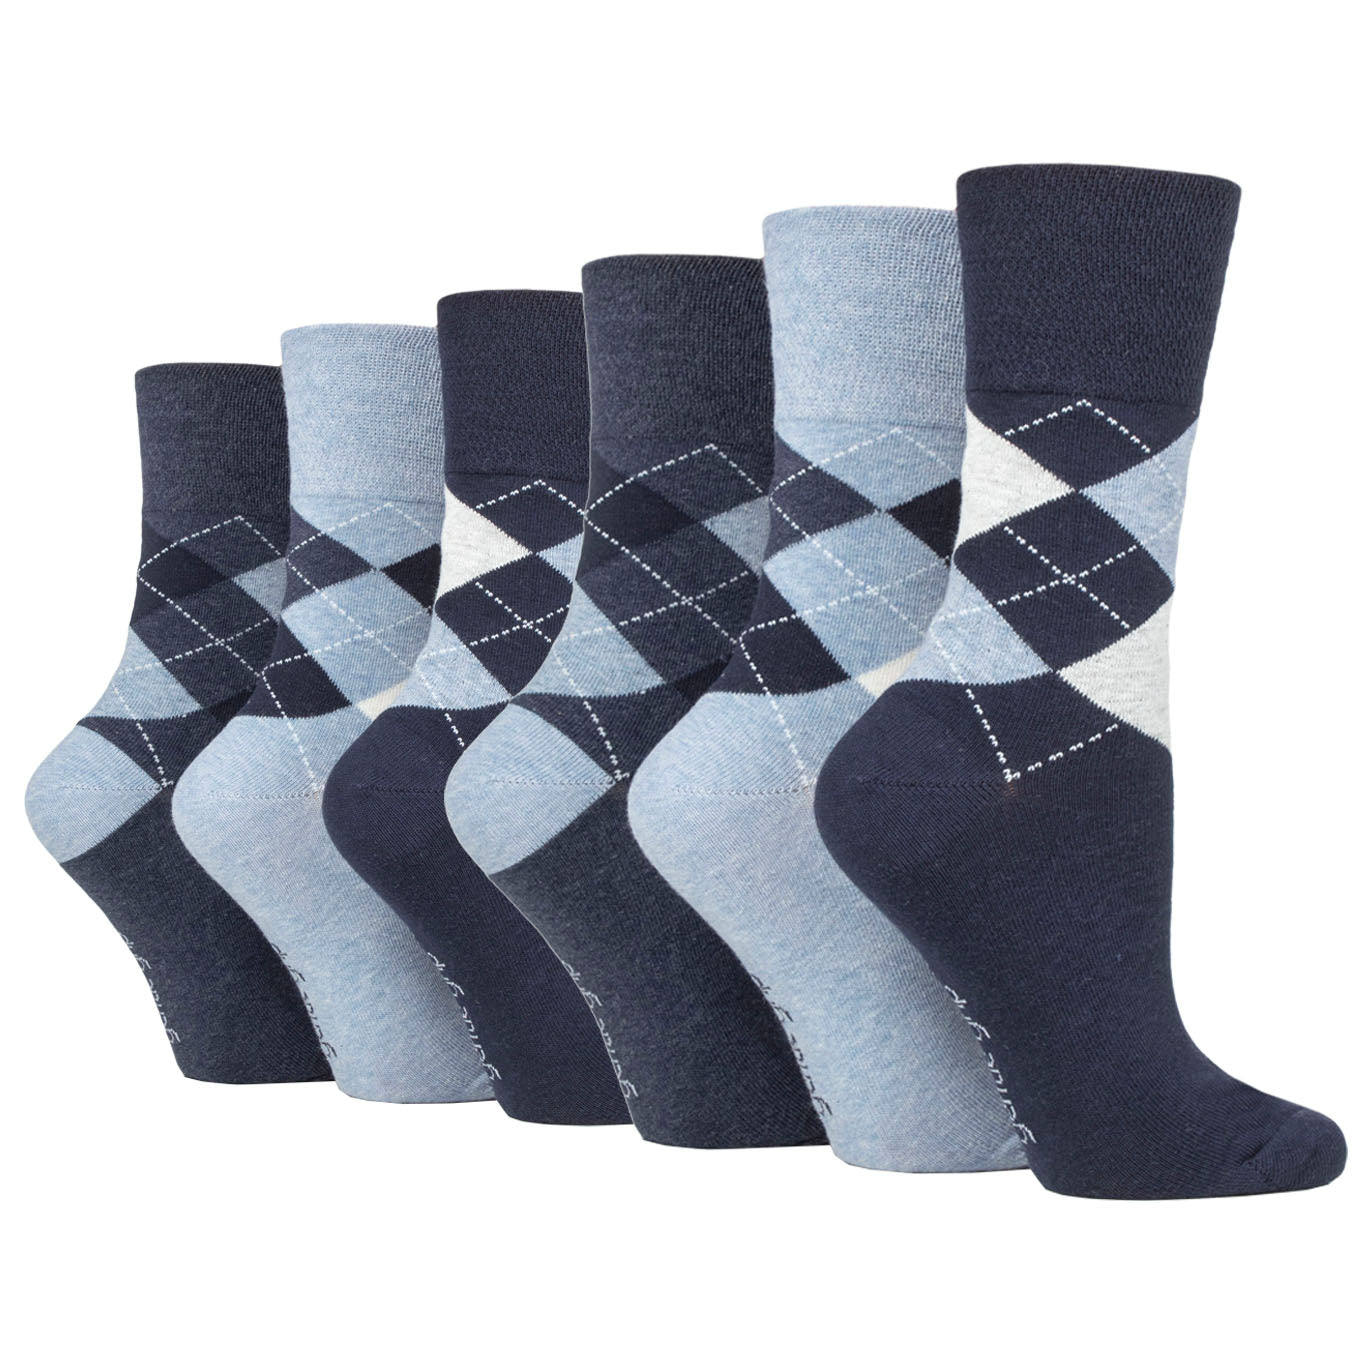 6 Pairs Ladies Gentle Grip Cotton Socks Highlands Argyle Navy/Denim